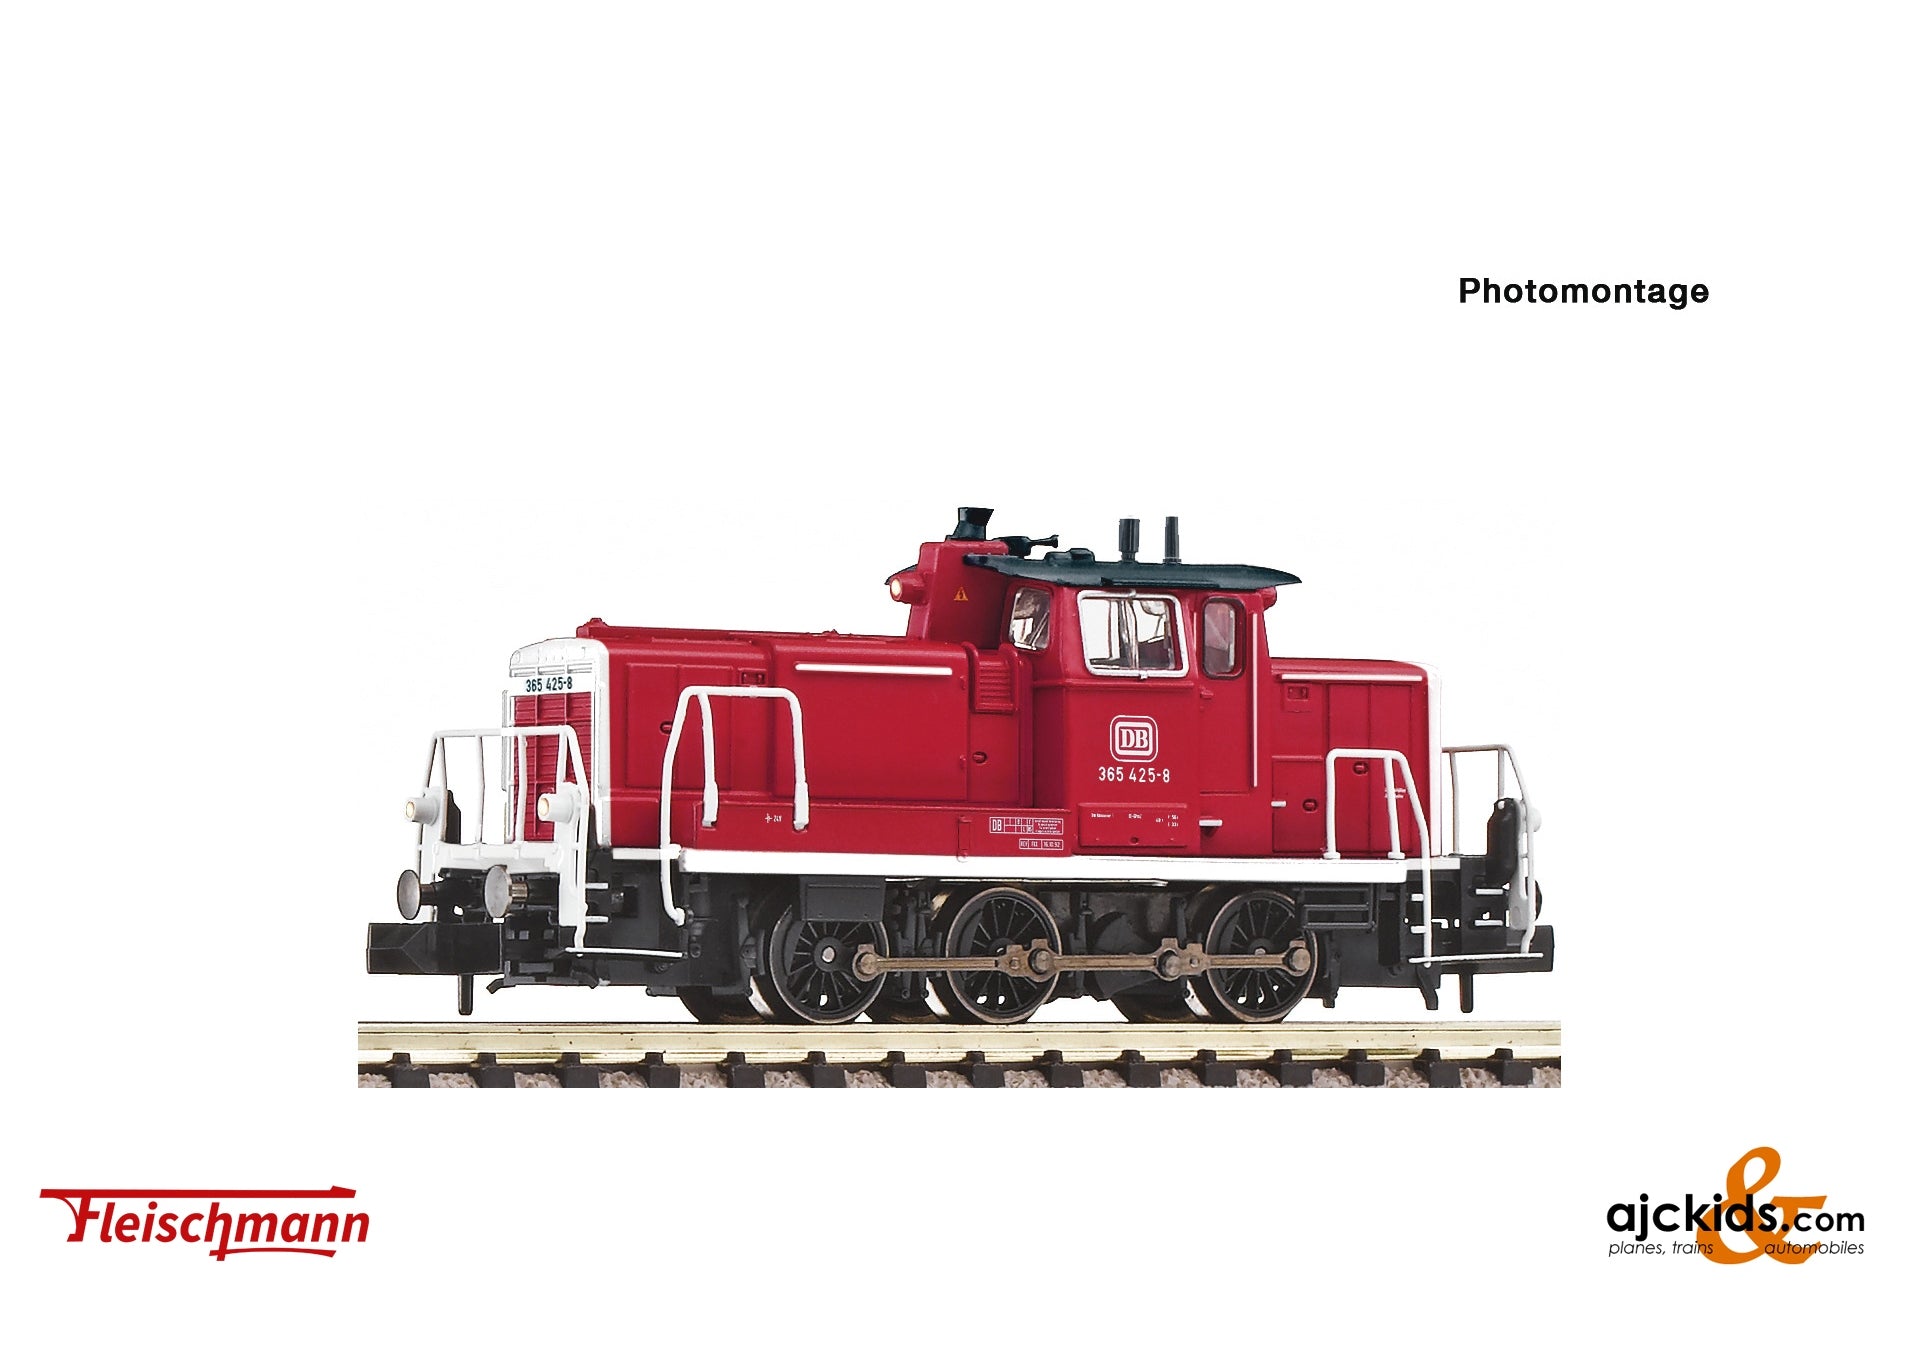 Fleischmann 7370003 - Diesel locomotive 365 425-8, DB at Ajckids.com